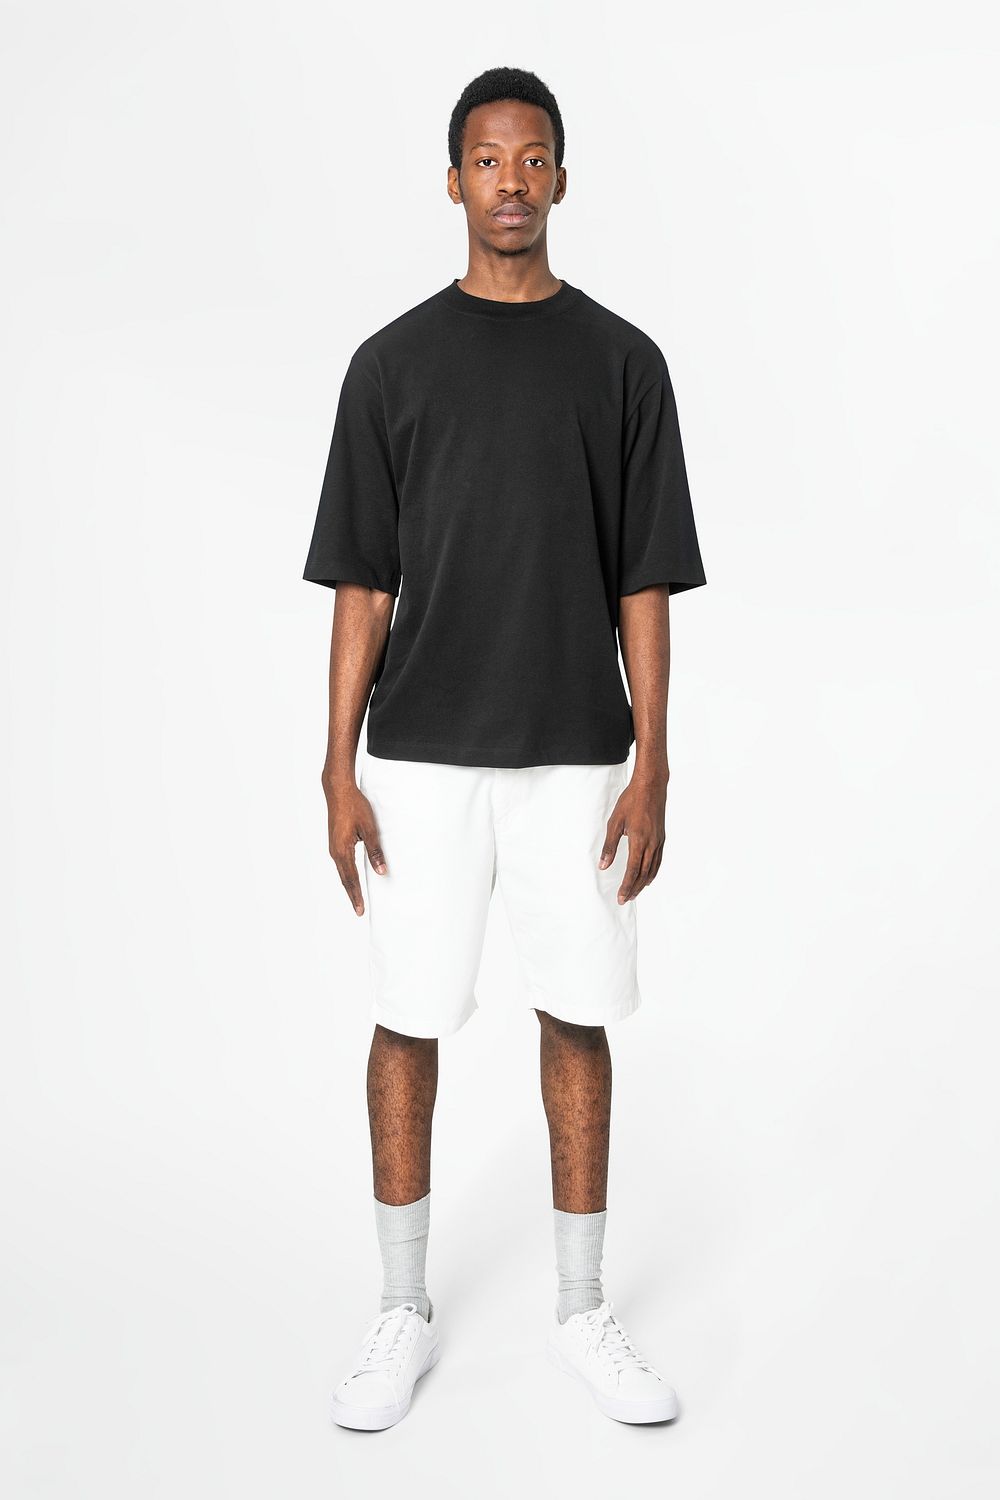 T-shirt mockup psd with shorts | Premium PSD Mockup - rawpixel